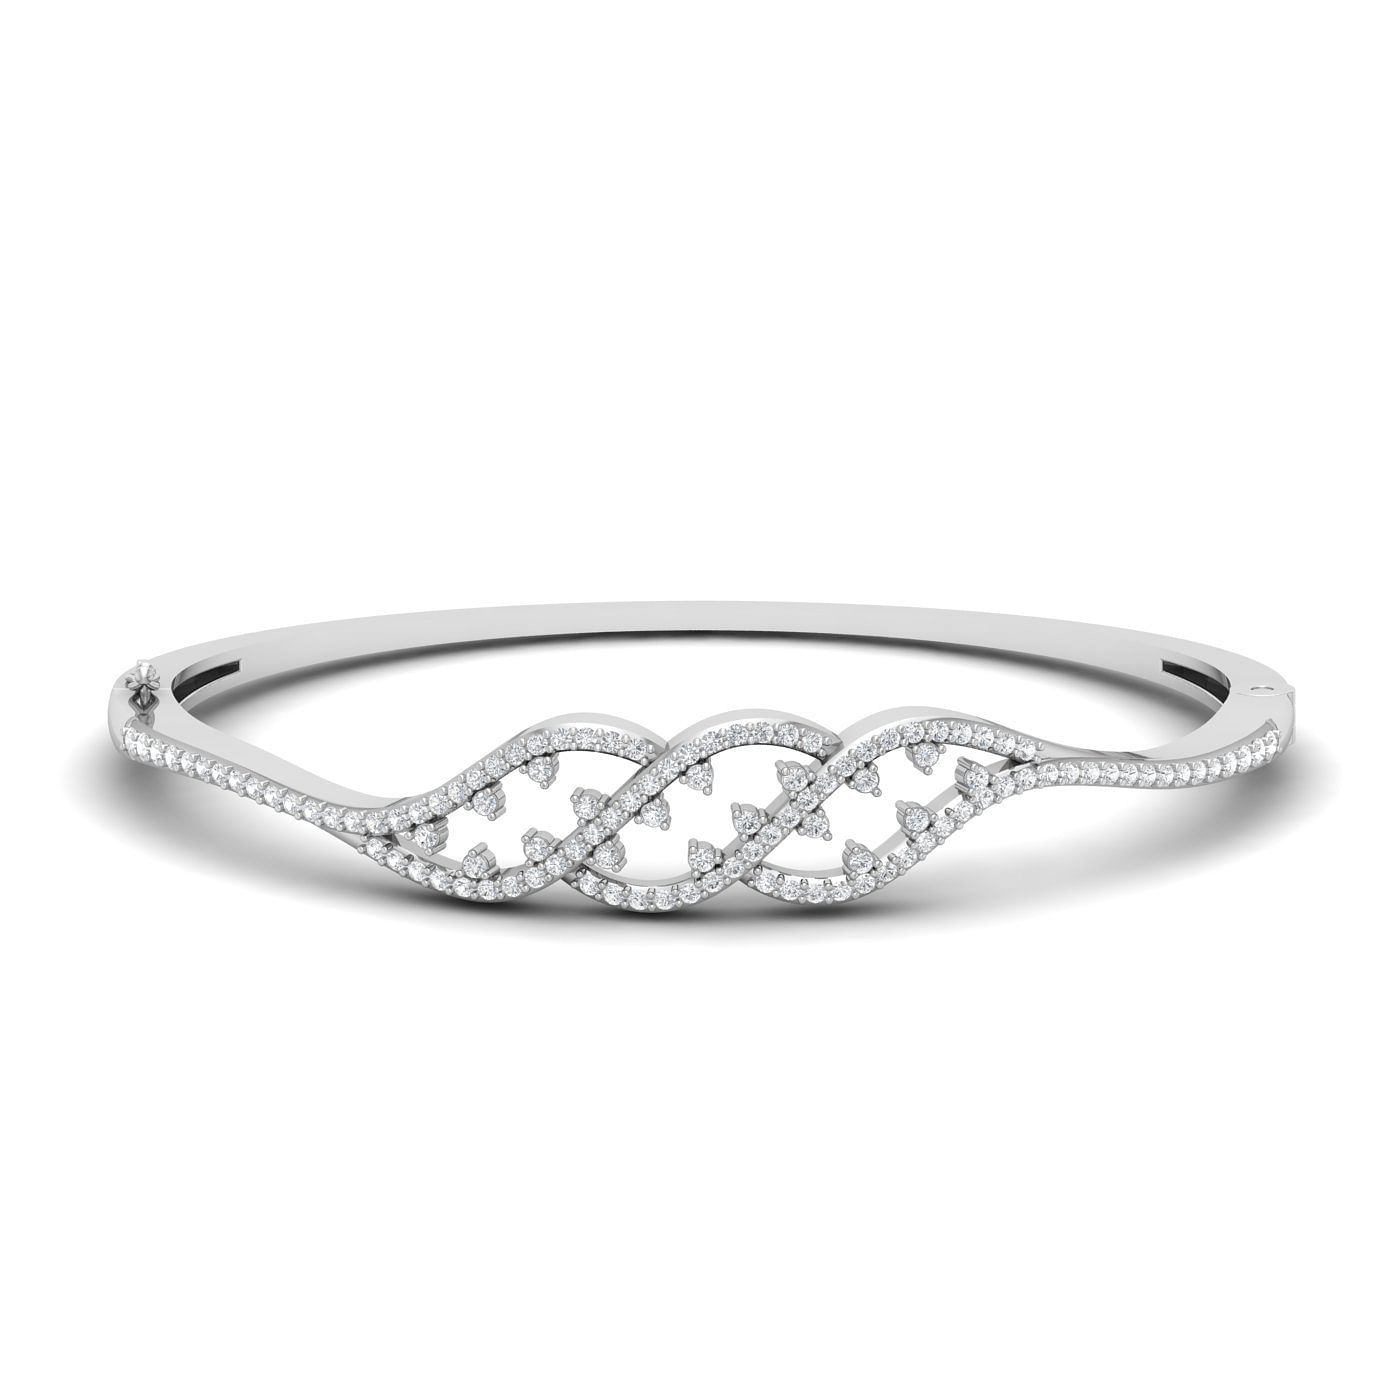 Designer engagement white gold Kaylee Diamond Bracelet